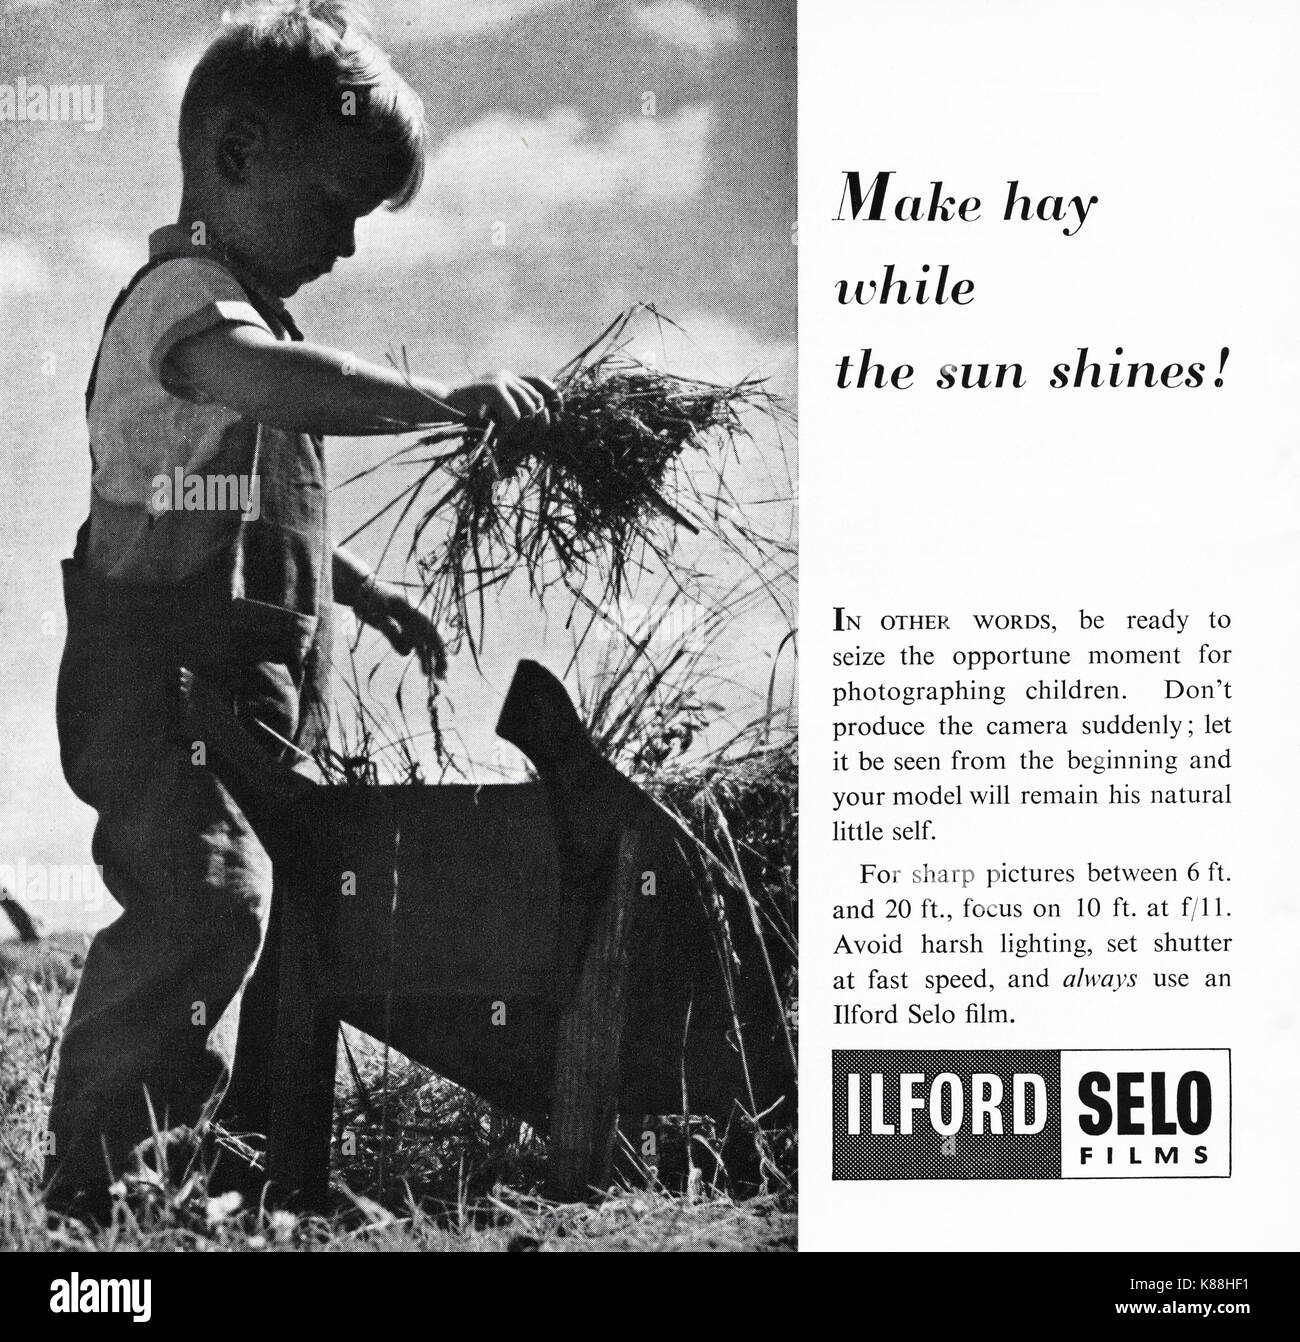 1940 old vintage publicité publicité originale films Ilford selo vers 1947 dans le magazine quand les stocks étaient encore limitée au titre de rationnement de l'après-guerre Banque D'Images